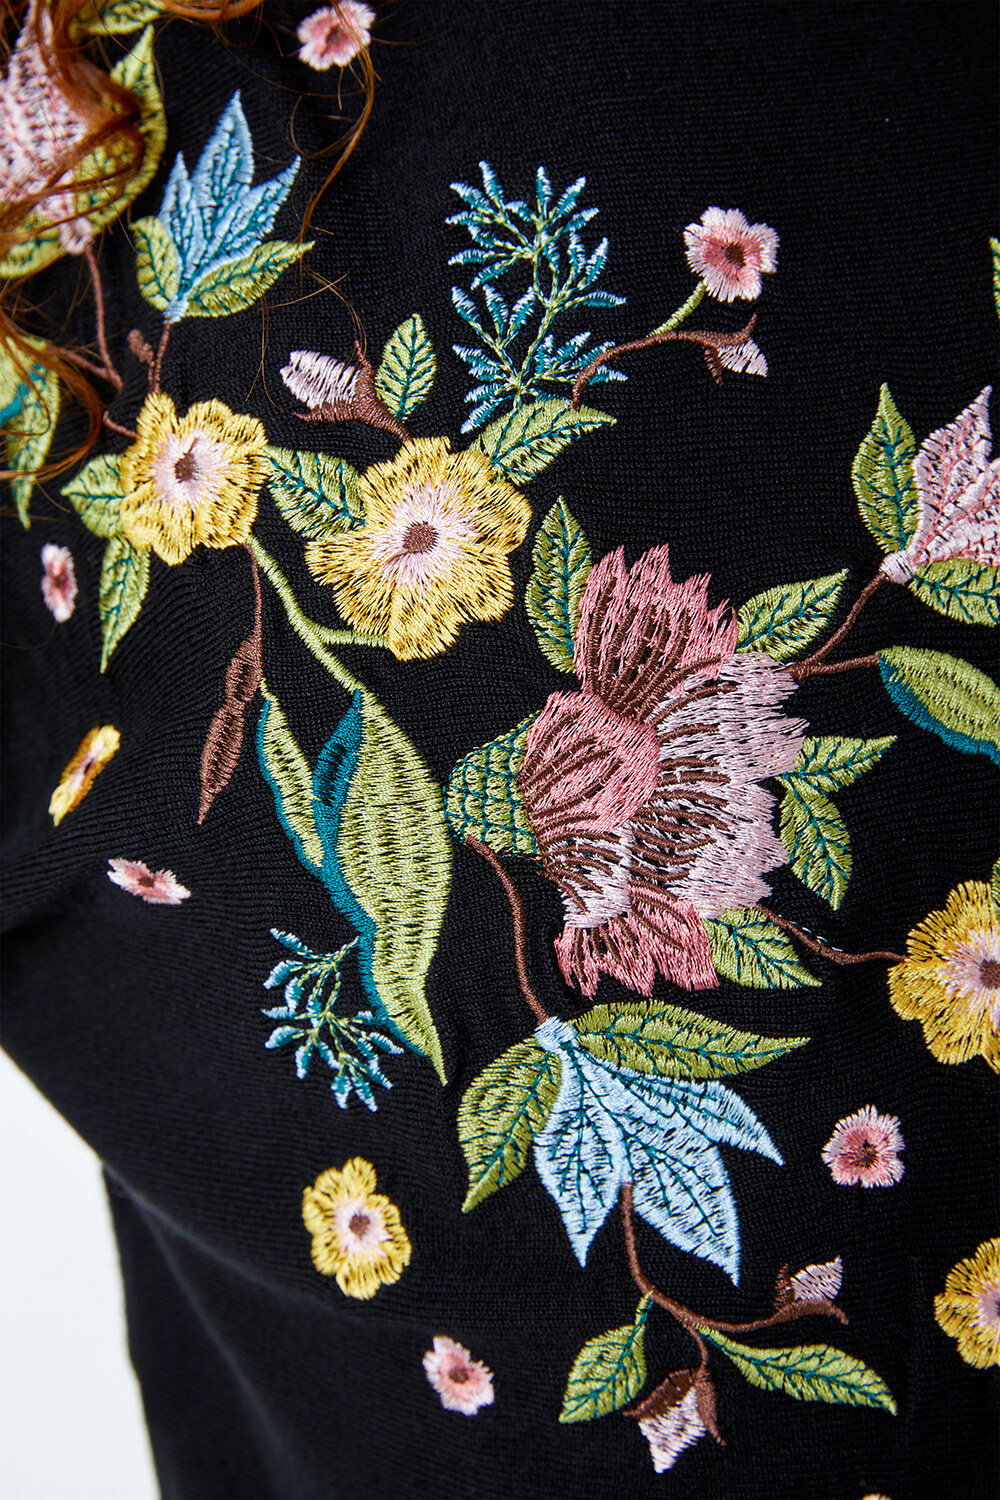 Floral Embroidered Jumper in Black - Roman Originals UK